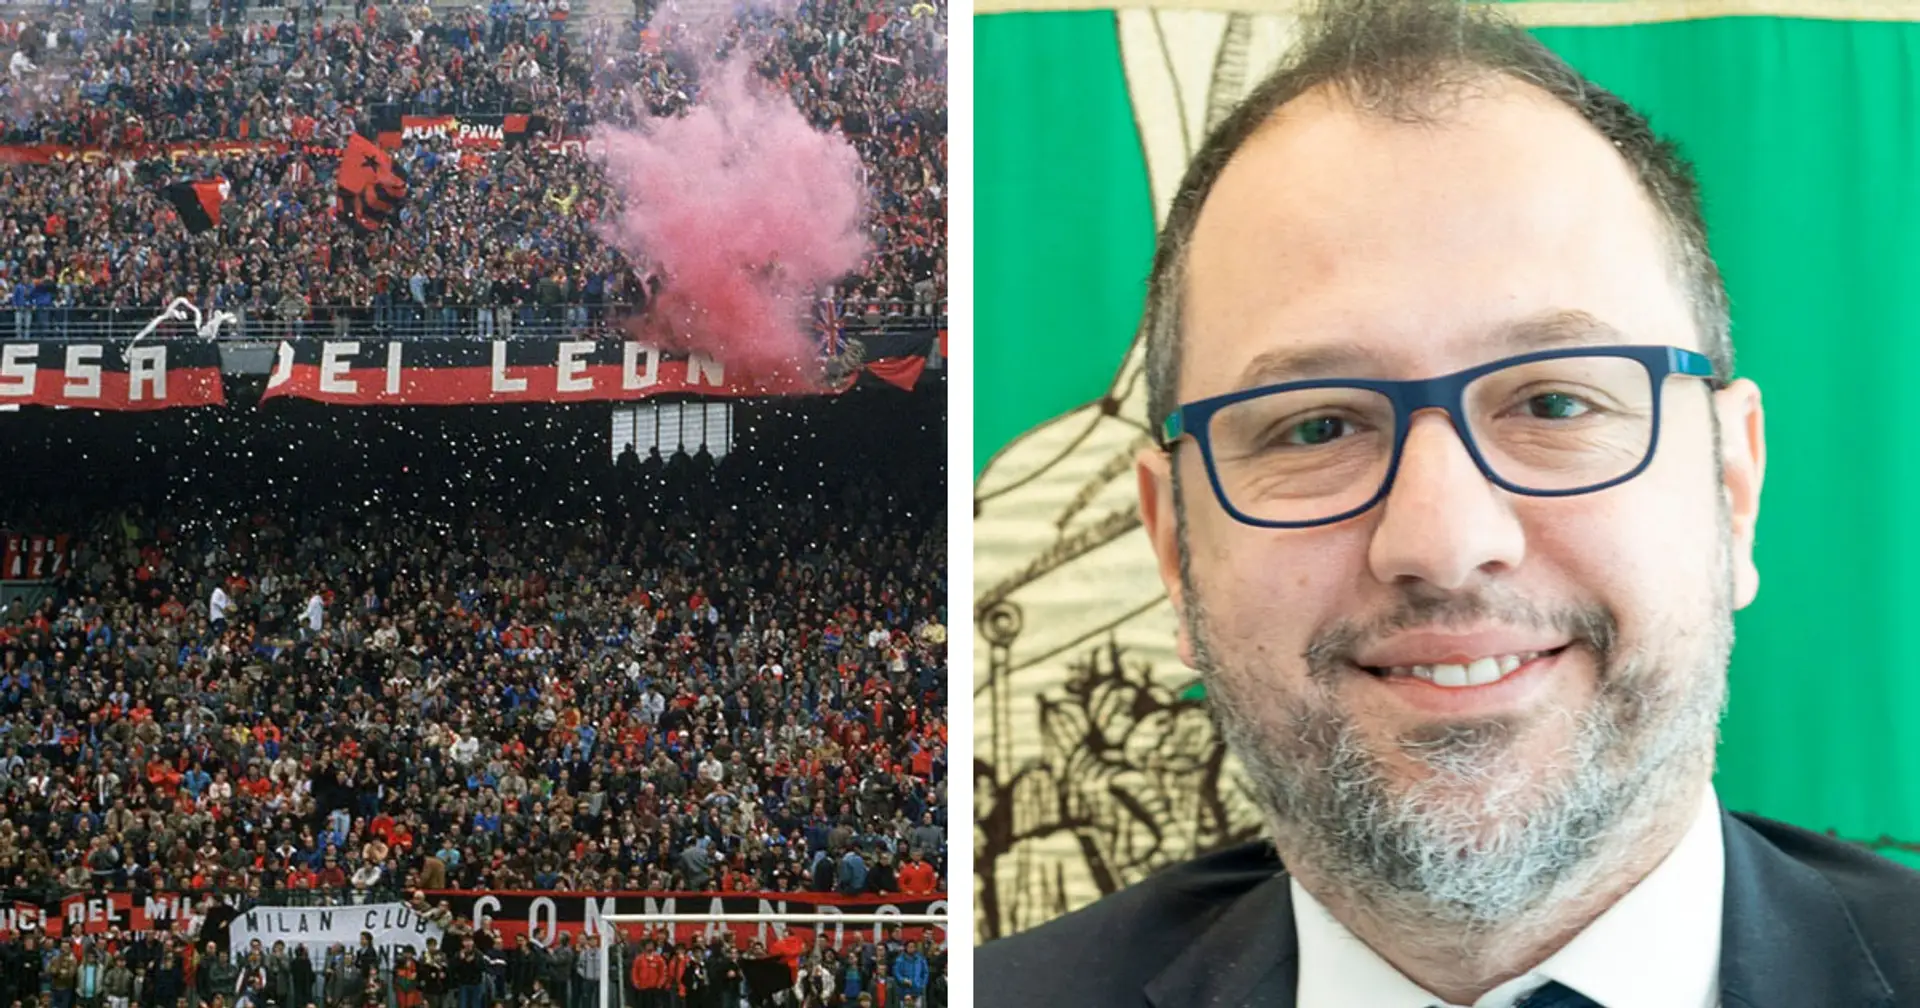 Nuovo stadio Milan, l'Assessore della Regione Lombardia: "Entro giugno verrà approvato l’accordo di programma"